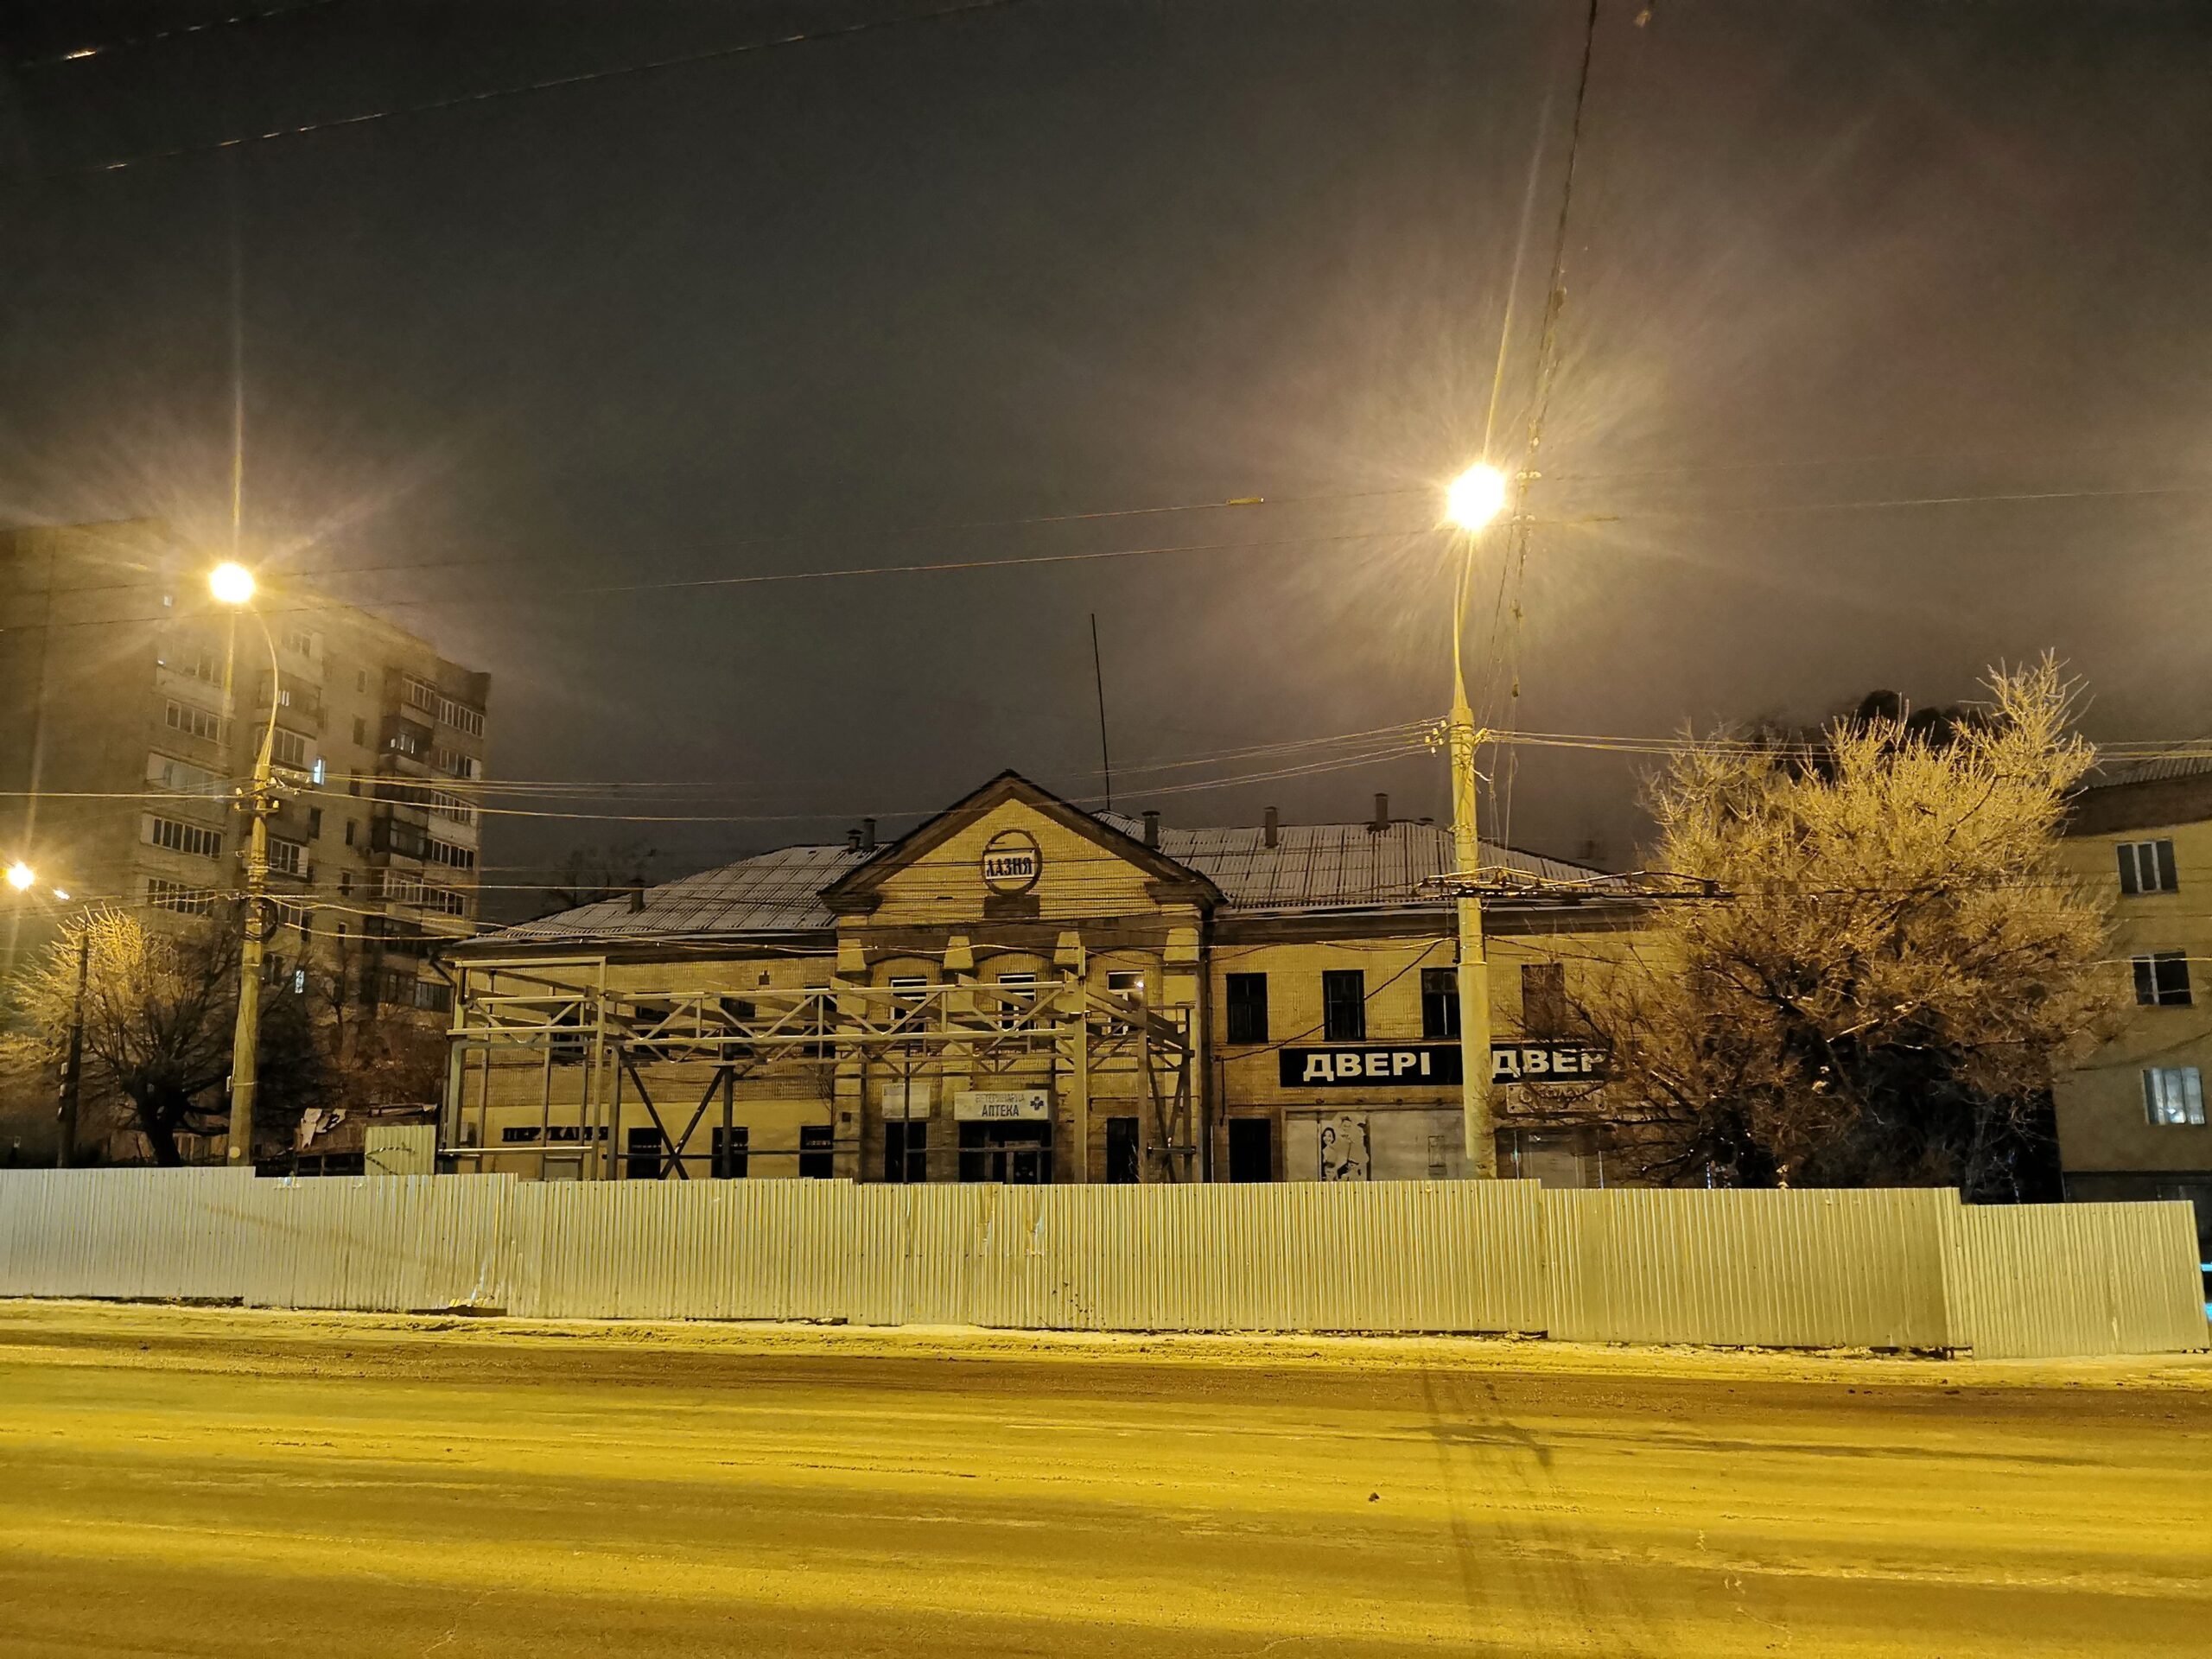 Міську лазню у центрі  Вінниці  побудували в 1950-х: будівля, яка  відразу була неякісною, сьогодні в аварійному стані чекає на  інвесторів